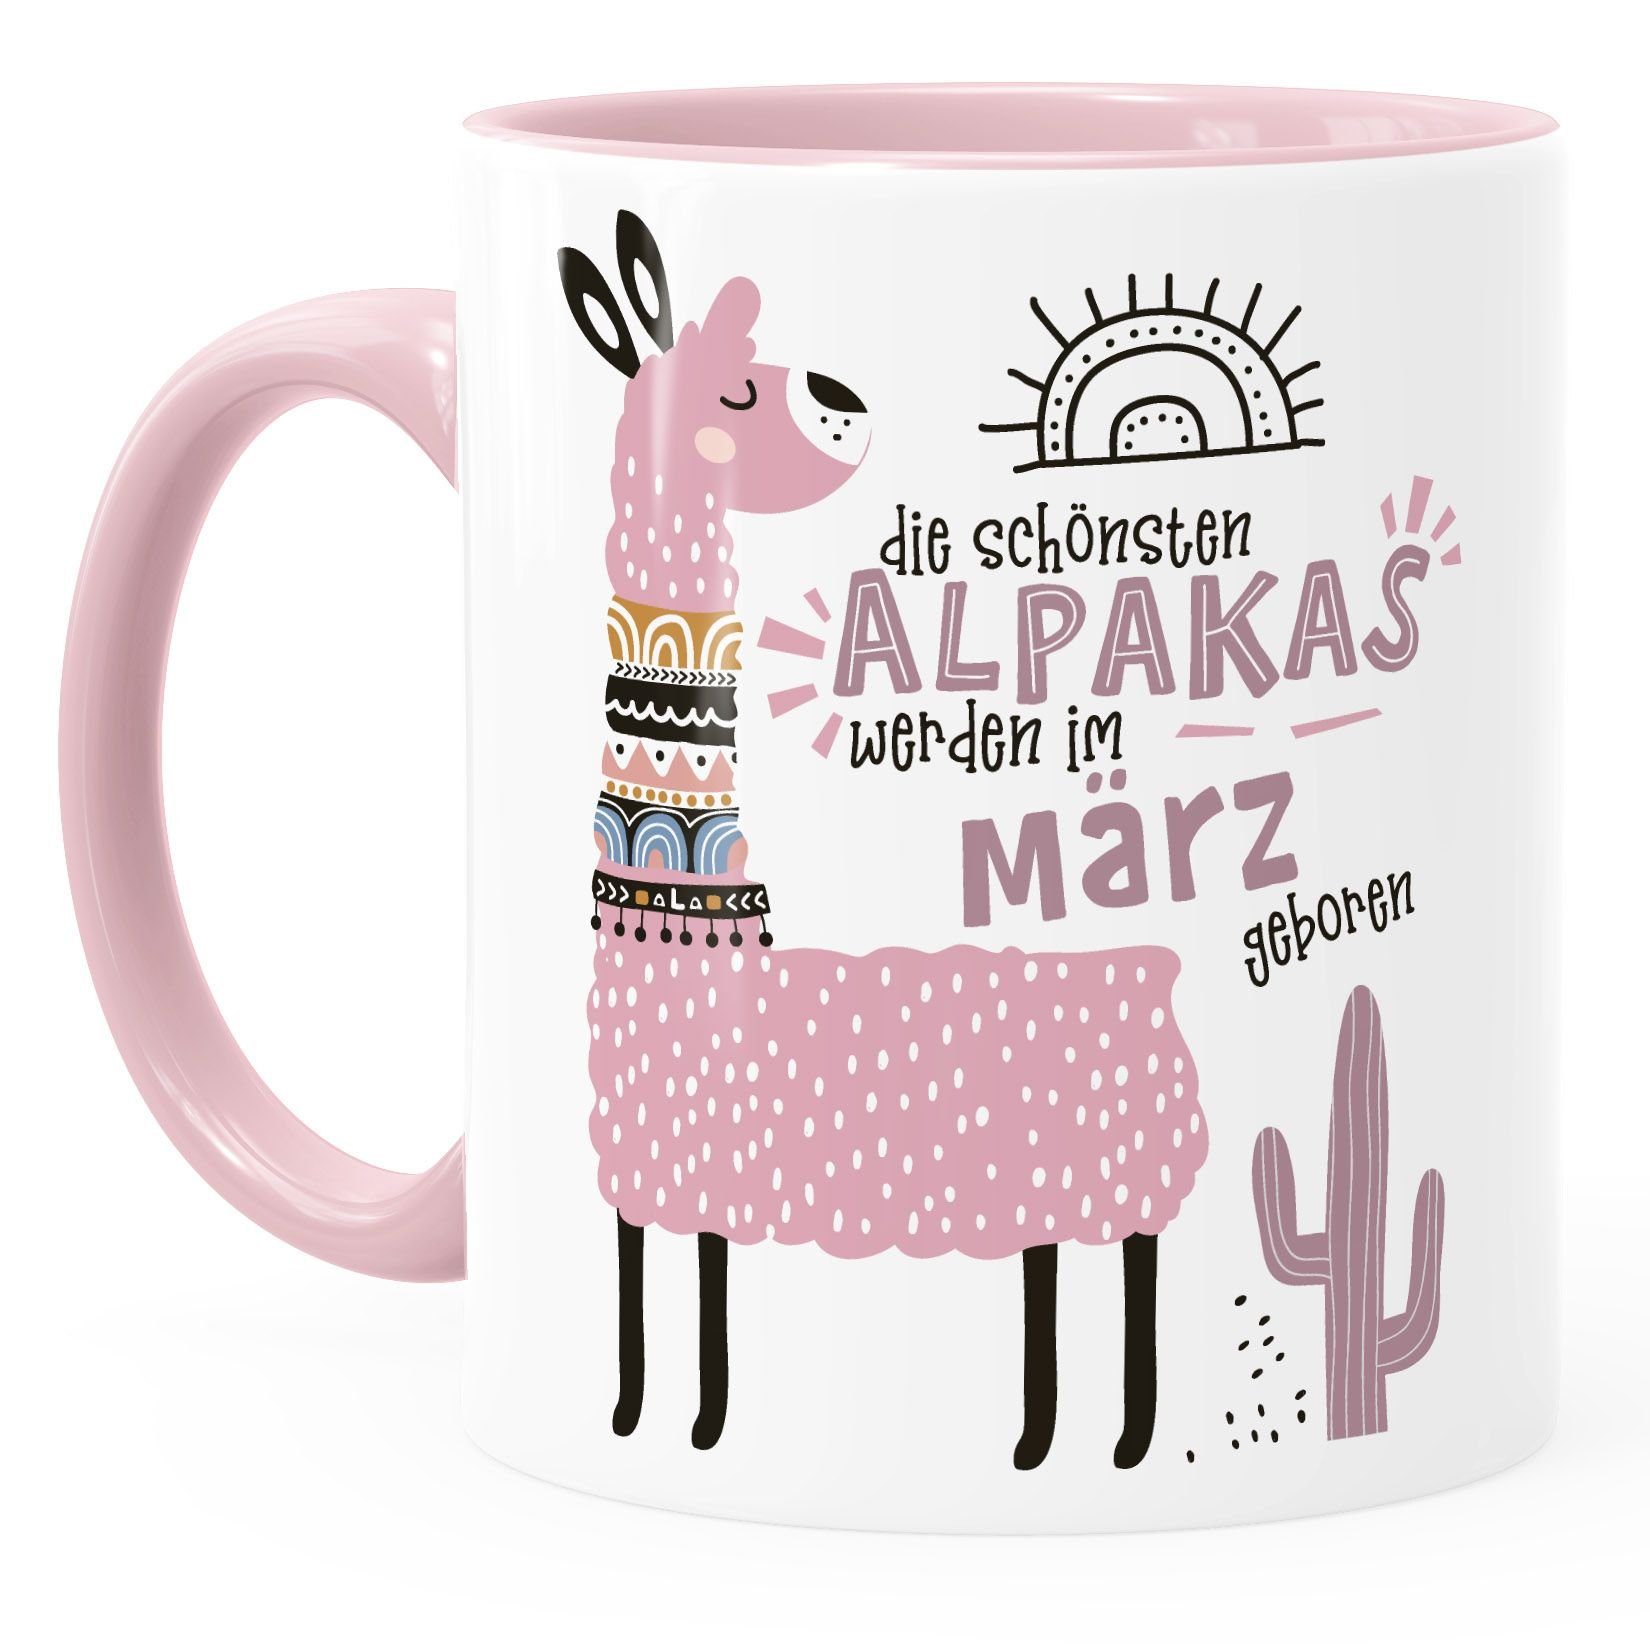 Motiv anpassbares Die Geburtsmonat Schönsten März Tasse rosa SpecialMe Geburtags-Geschenke SpecialMe®, Kaffee-Tasse im Lama geboren Keramik werden Alpakas Rosa Januar-Dezember individuelle